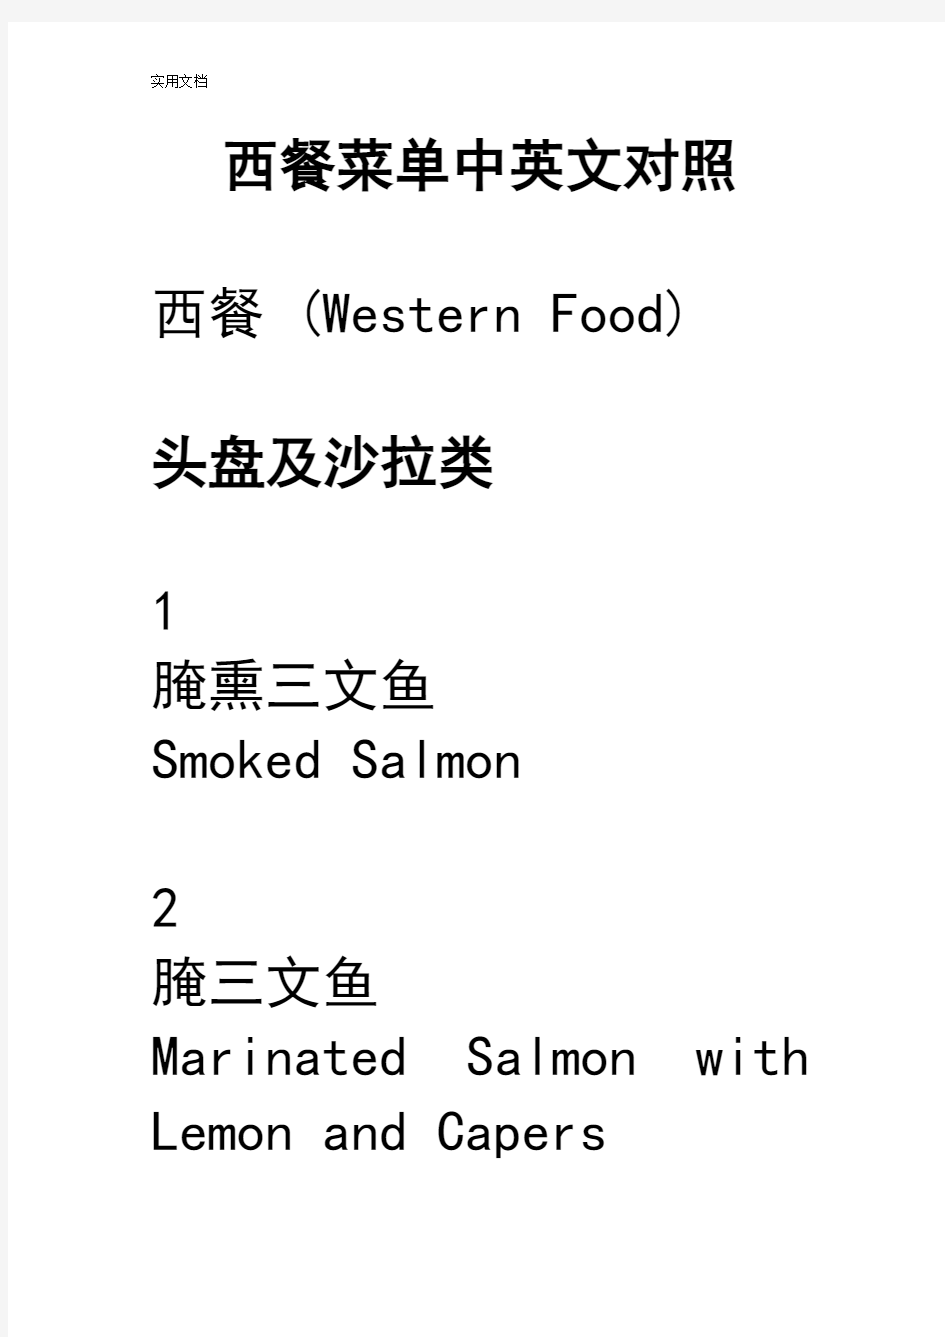 西餐菜单中英文对照